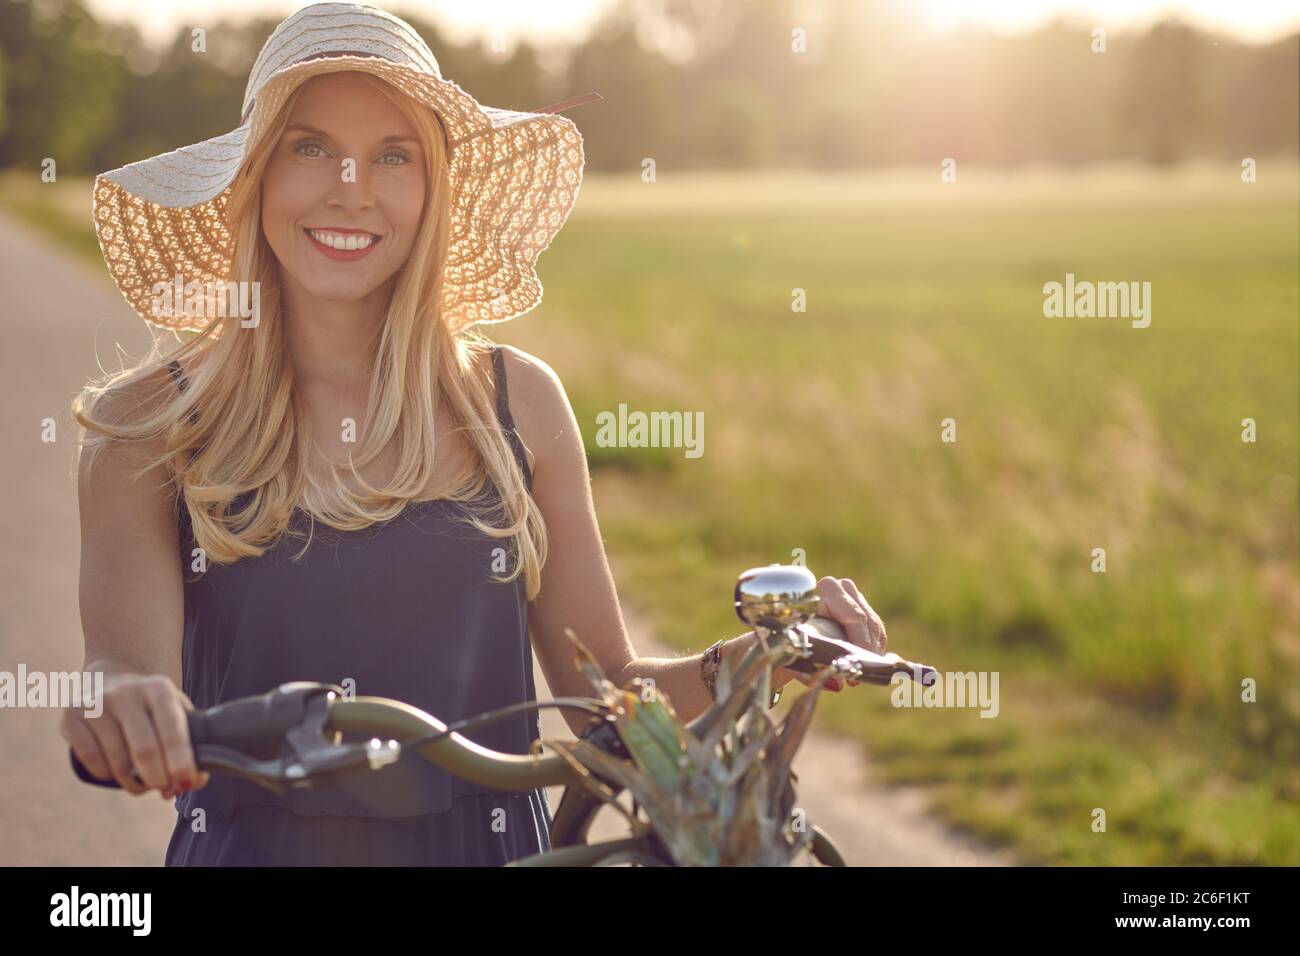 Belle femme portant un chapeau de paille à large bord shopping pour des produits frais dans le pays en faisant rouler sa bicyclette le long d'une voie rurale dans un pays chaud d'evenin Banque D'Images